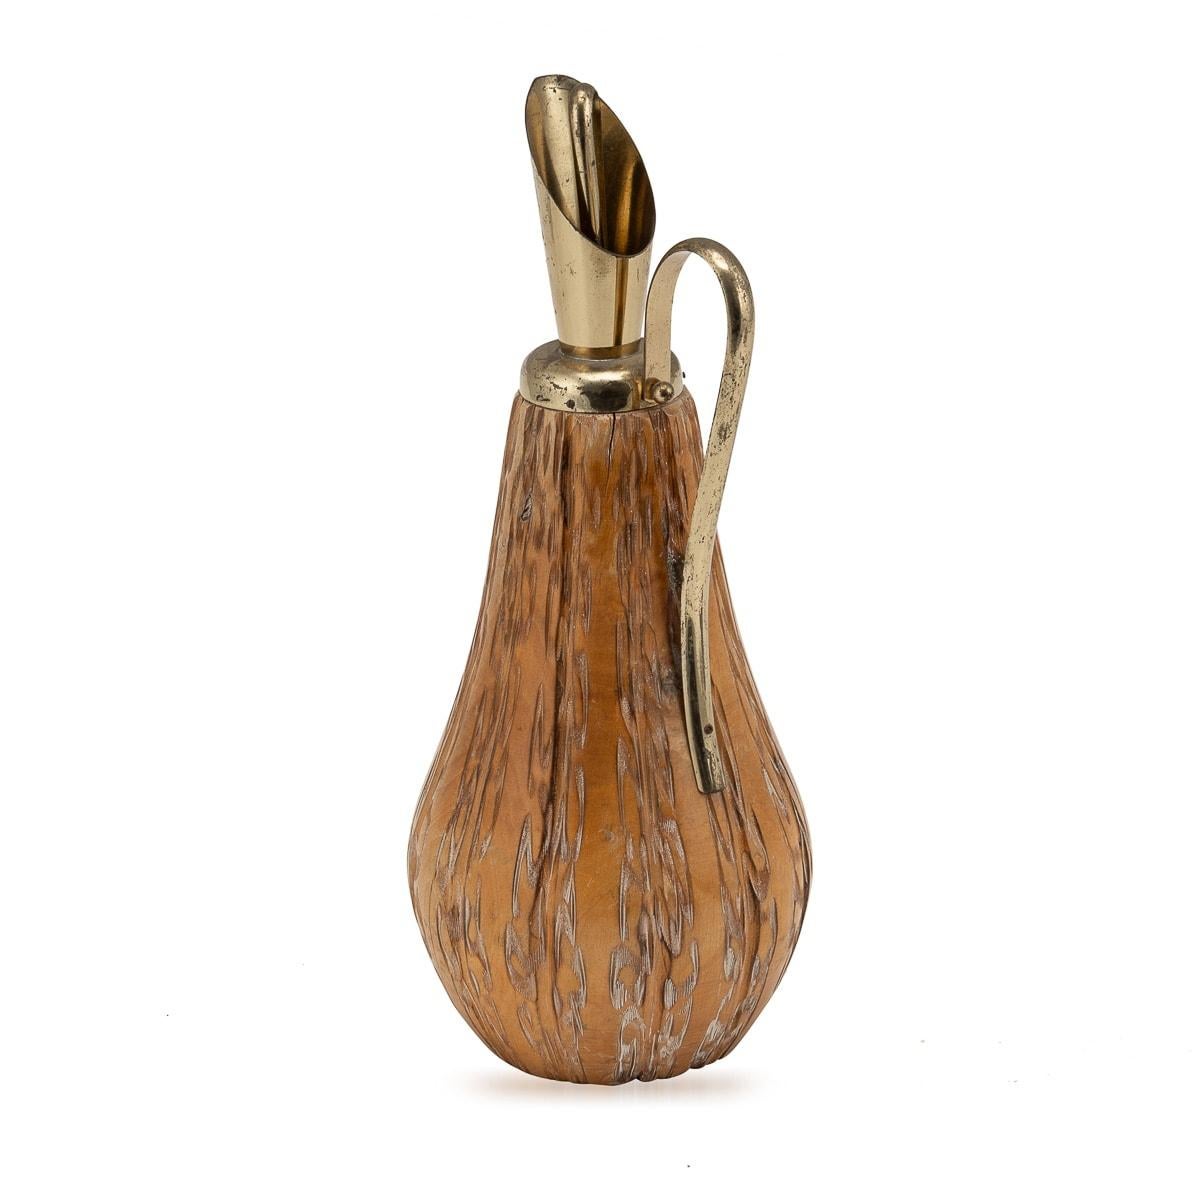 Eine Holzflasche von Aldo Tura, hergestellt für Macabo, Cusano Milanino, in Italien um die 1960er Jahre. Dieses exquisite Stück spiegelt den unverwechselbaren Stil von Aldo Tura wider, einem renommierten italienischen Designer, der für seine